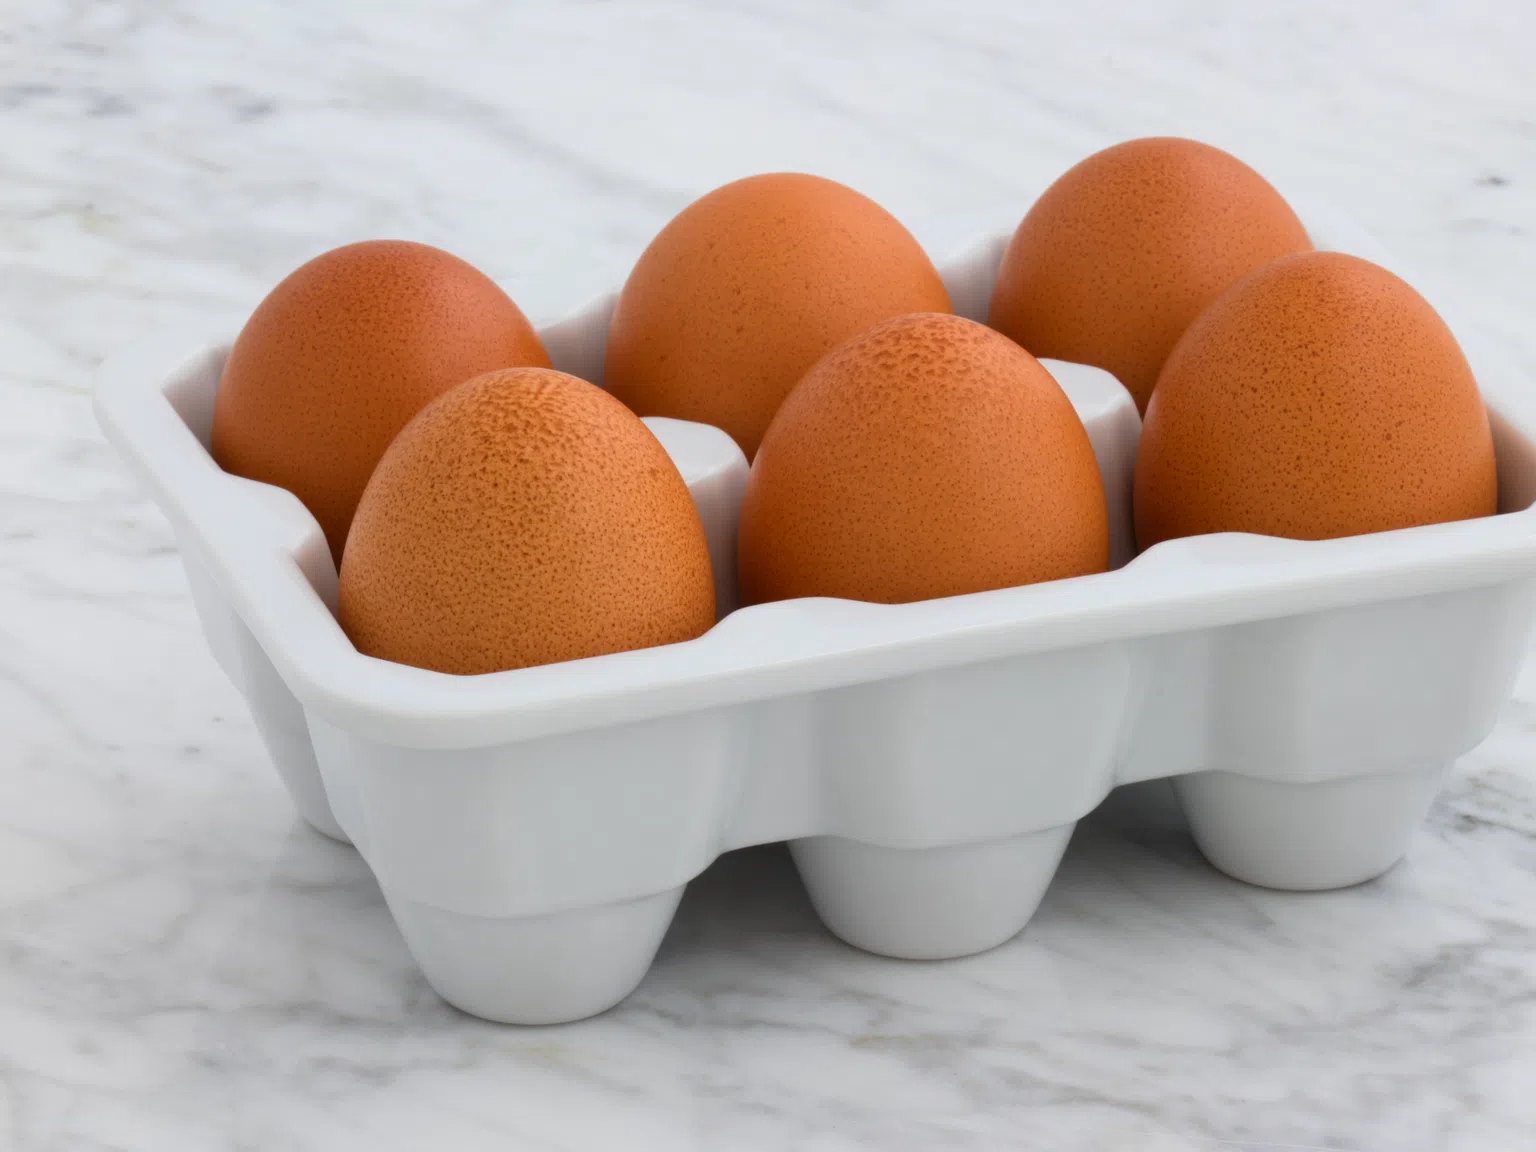 Защо след пазар трябва да обърнете яйцата с главата надолу